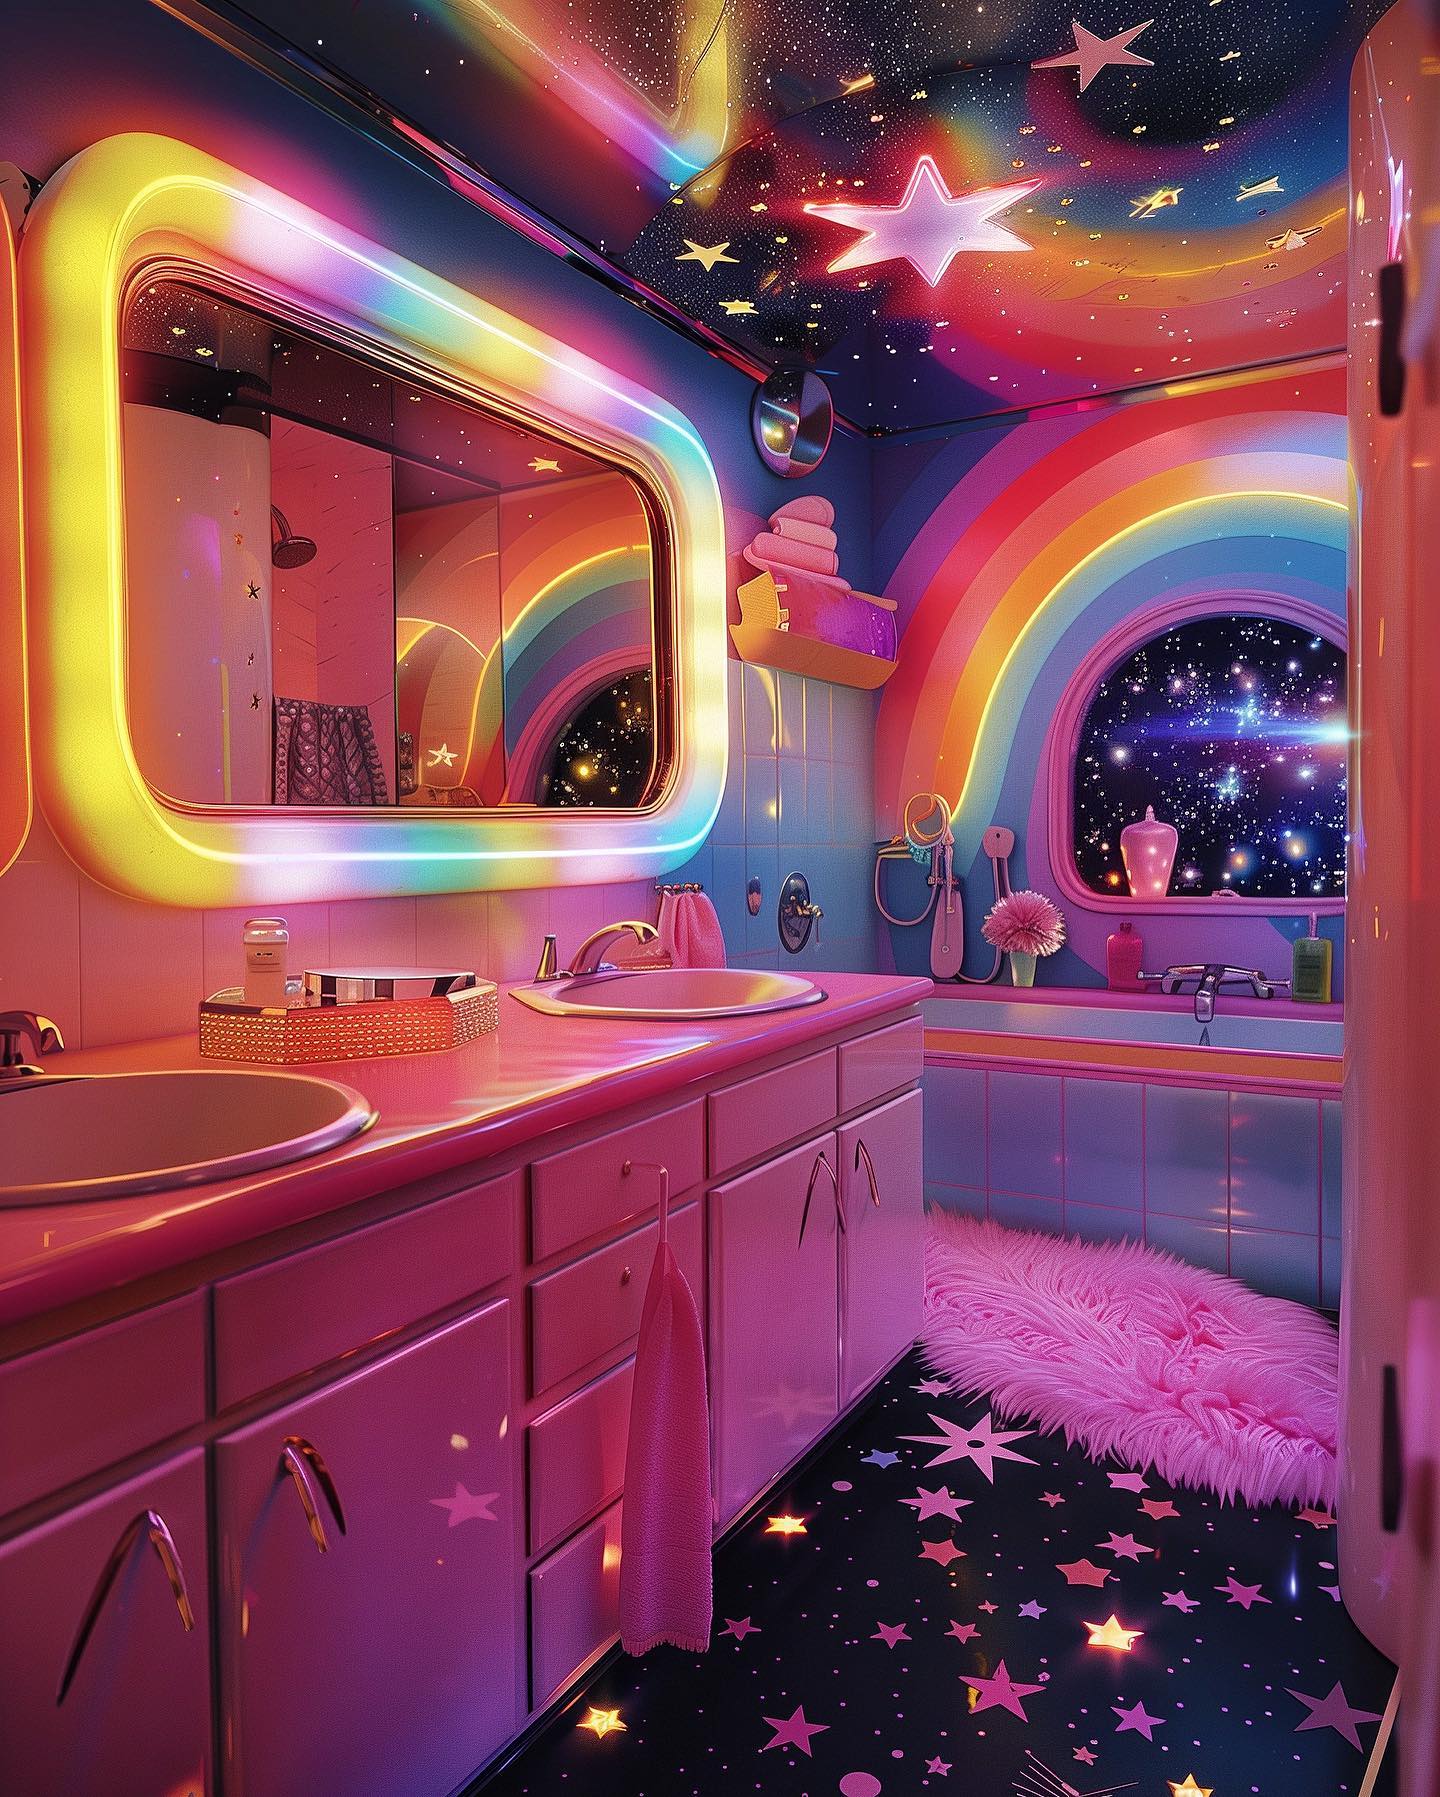 The Rainbow Bathroom